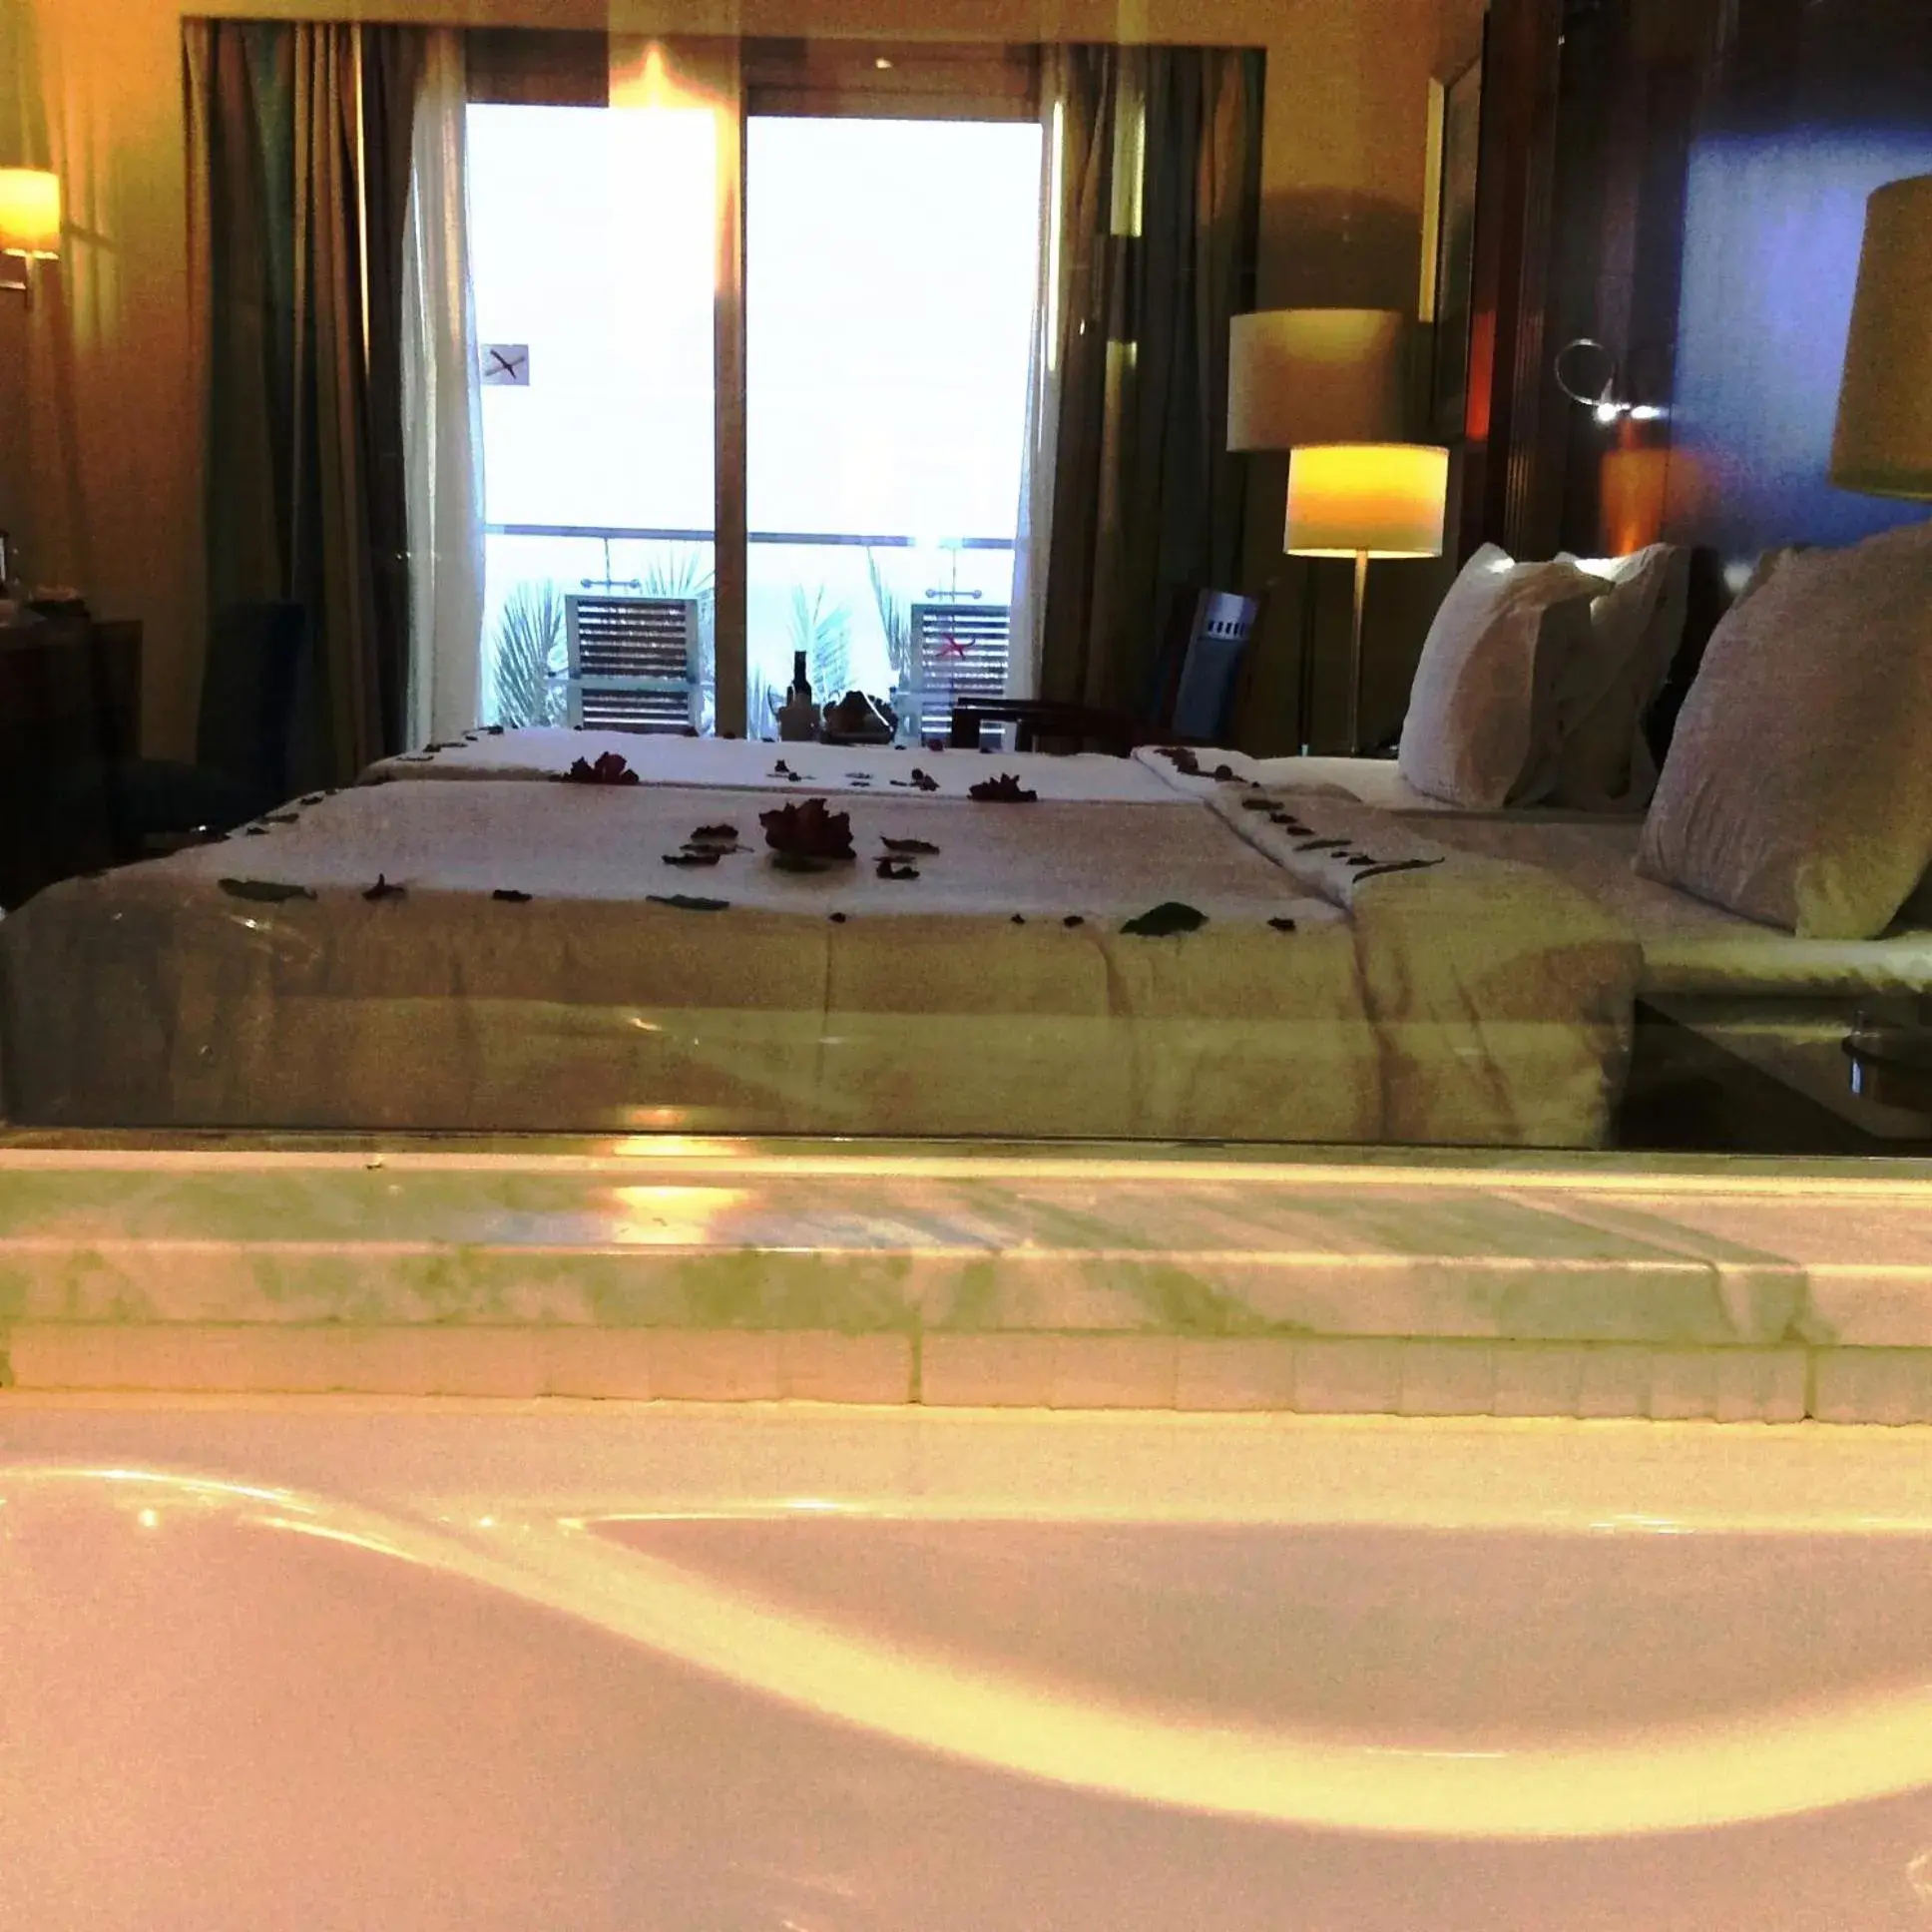 Bedroom in Xperience Sea Breeze Resort